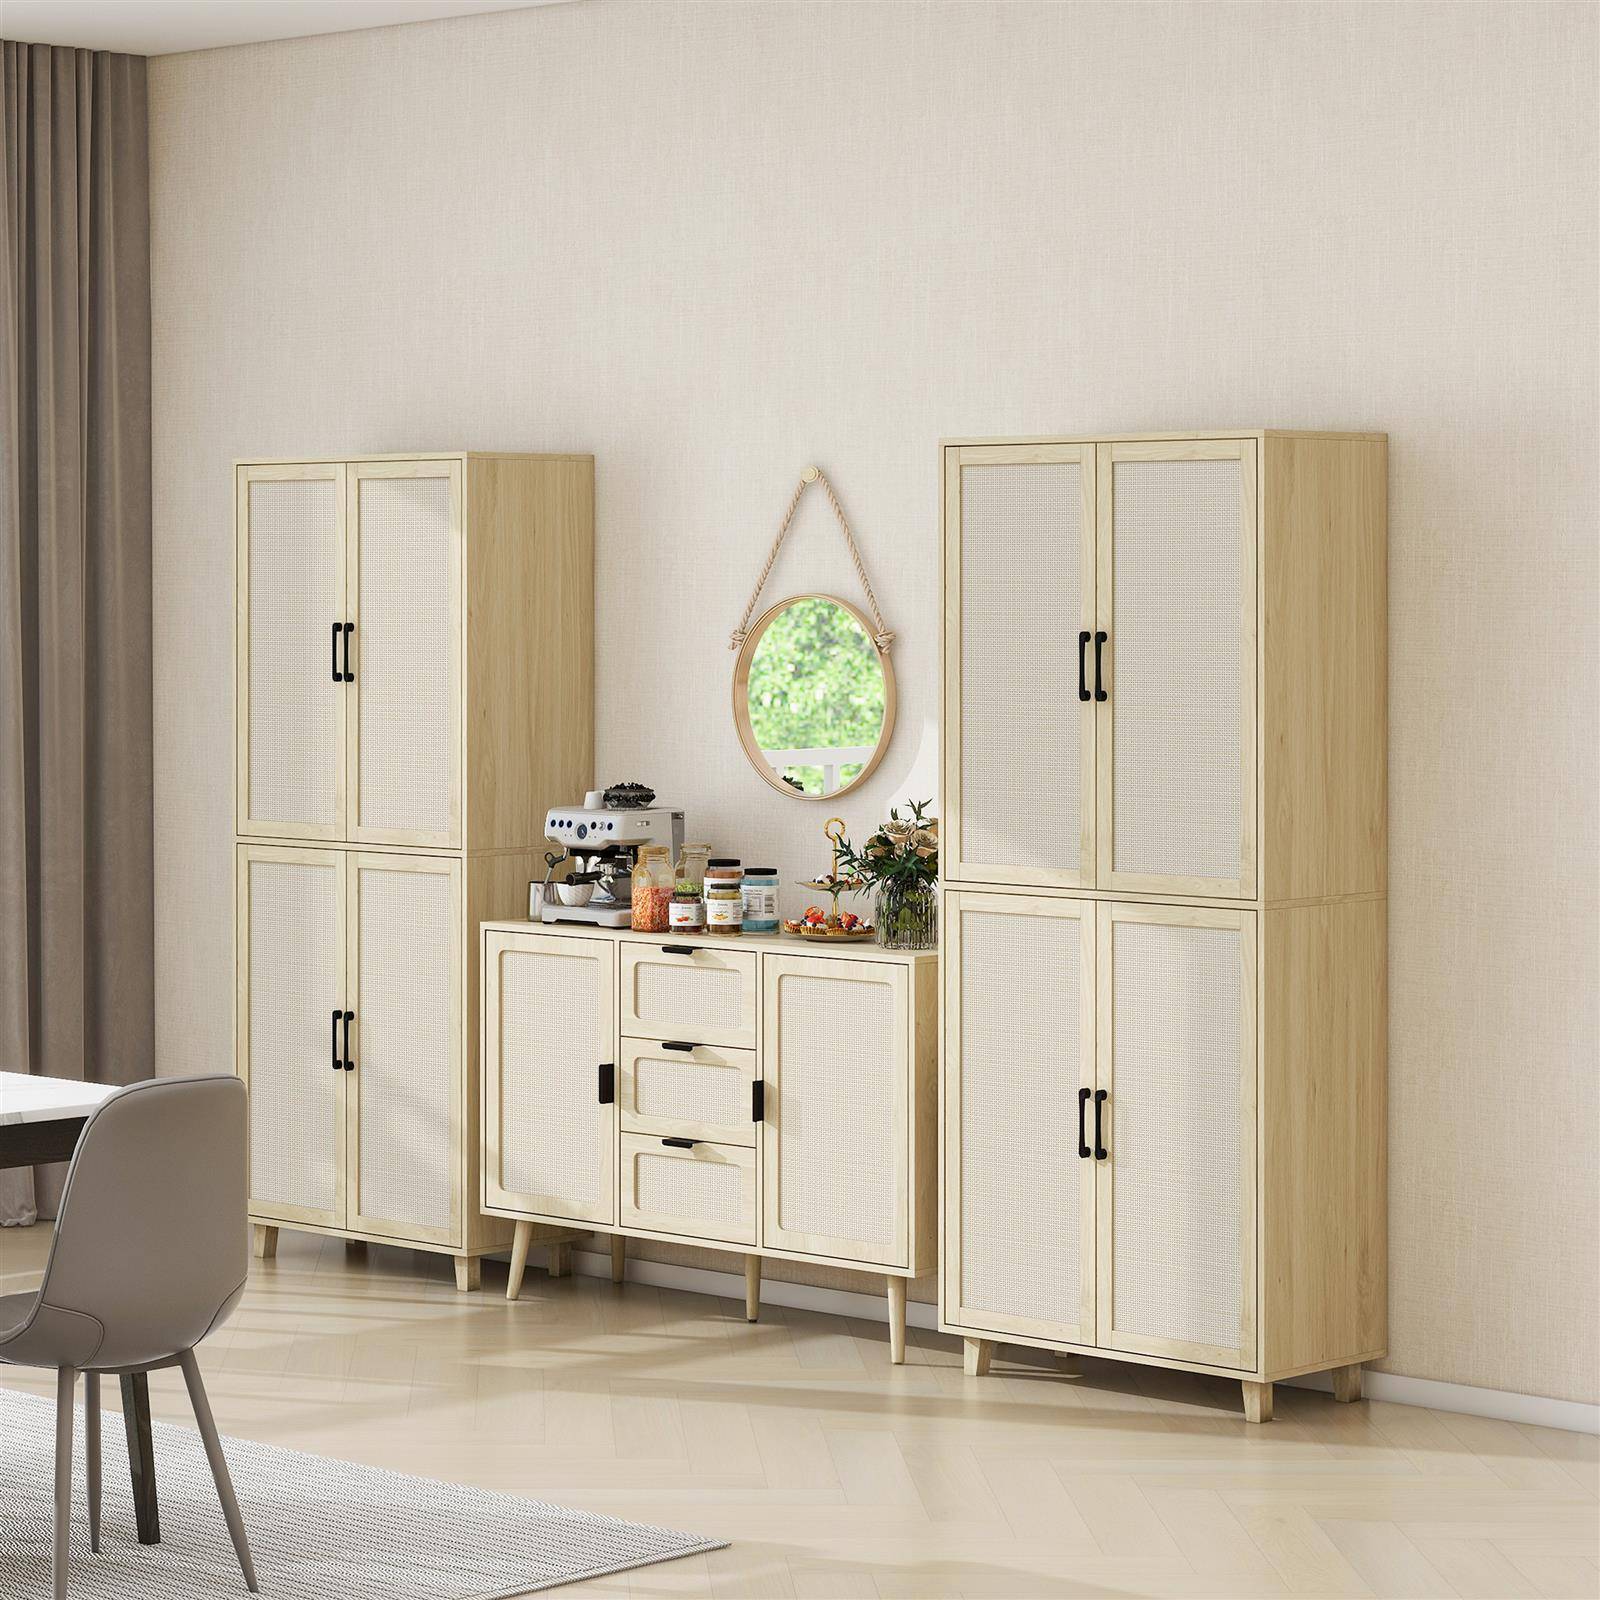 4 Door Cabinet, with 4 Adjustable Inner Shelves, Storage Cabinet Success